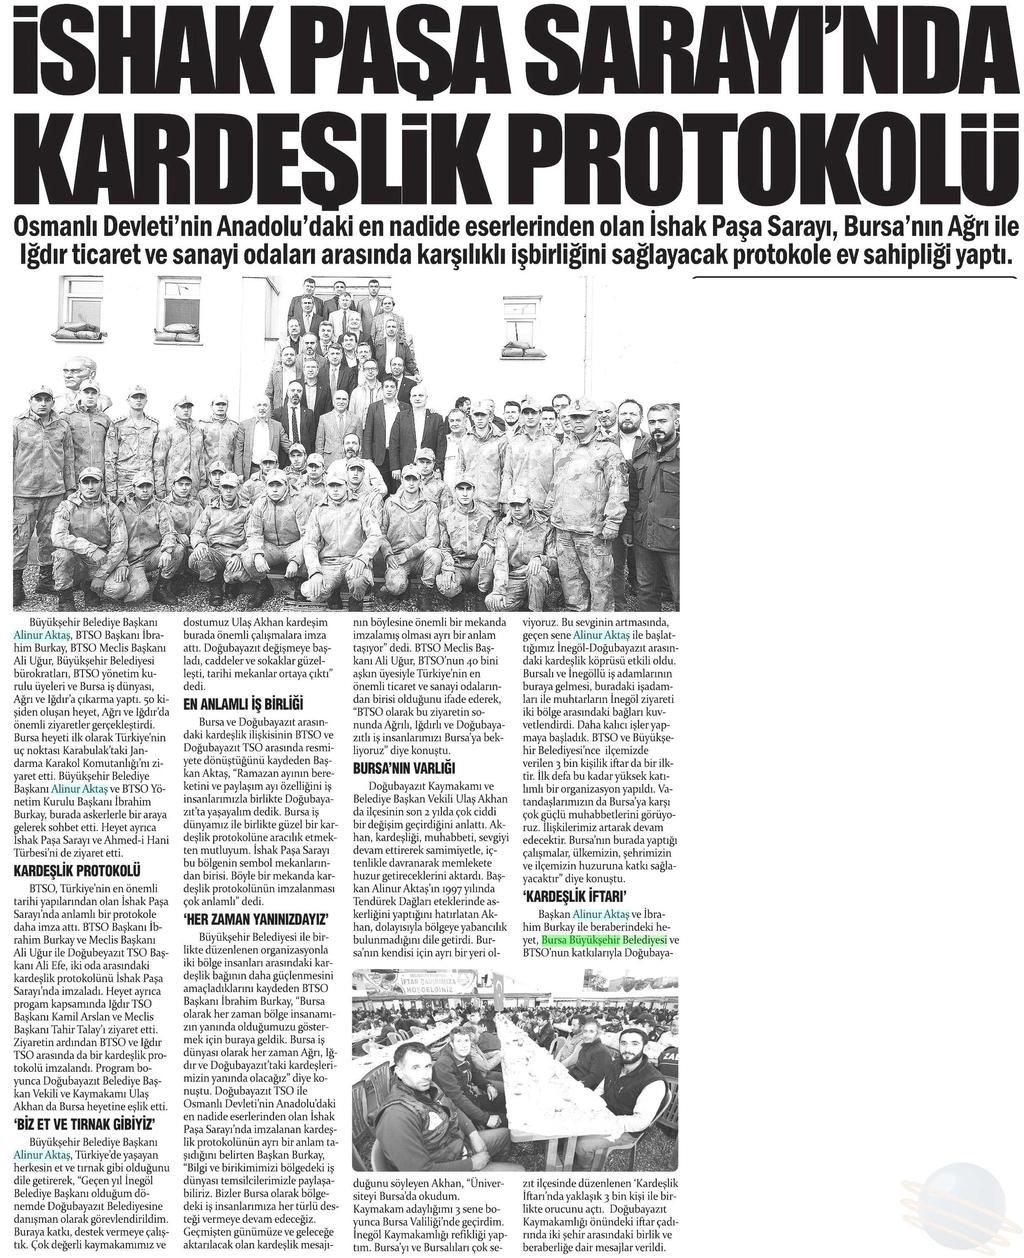 KARDESLIK KÖPRÜSÜ Yayın Adı : Gazete Bursa